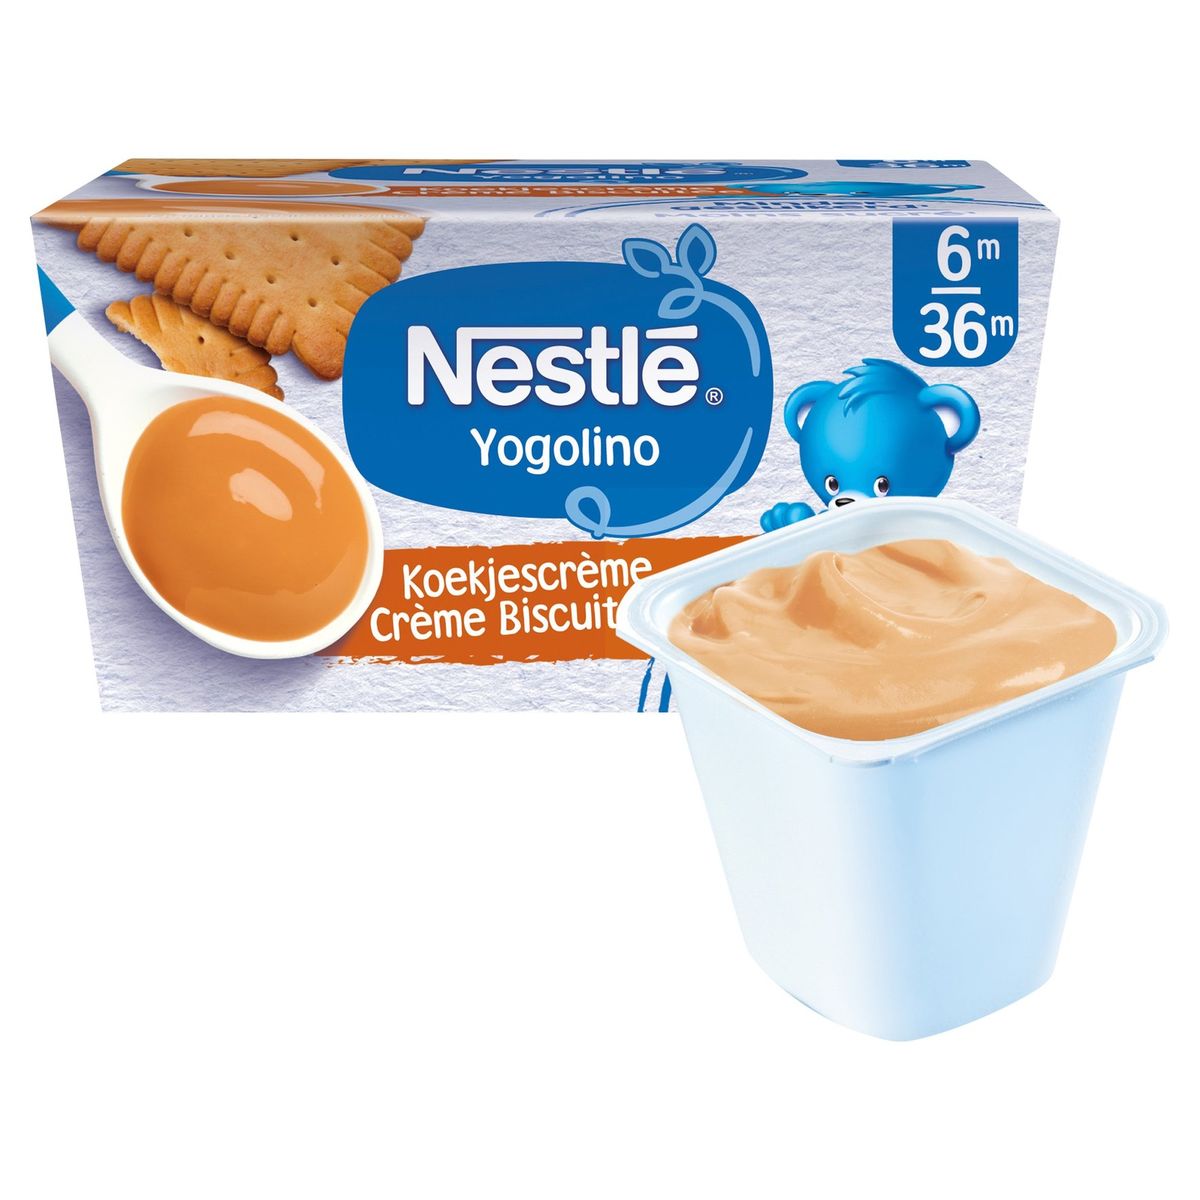 Nestlé Yogolino Crème Biscuitée 6M 36M 4 x 100 g